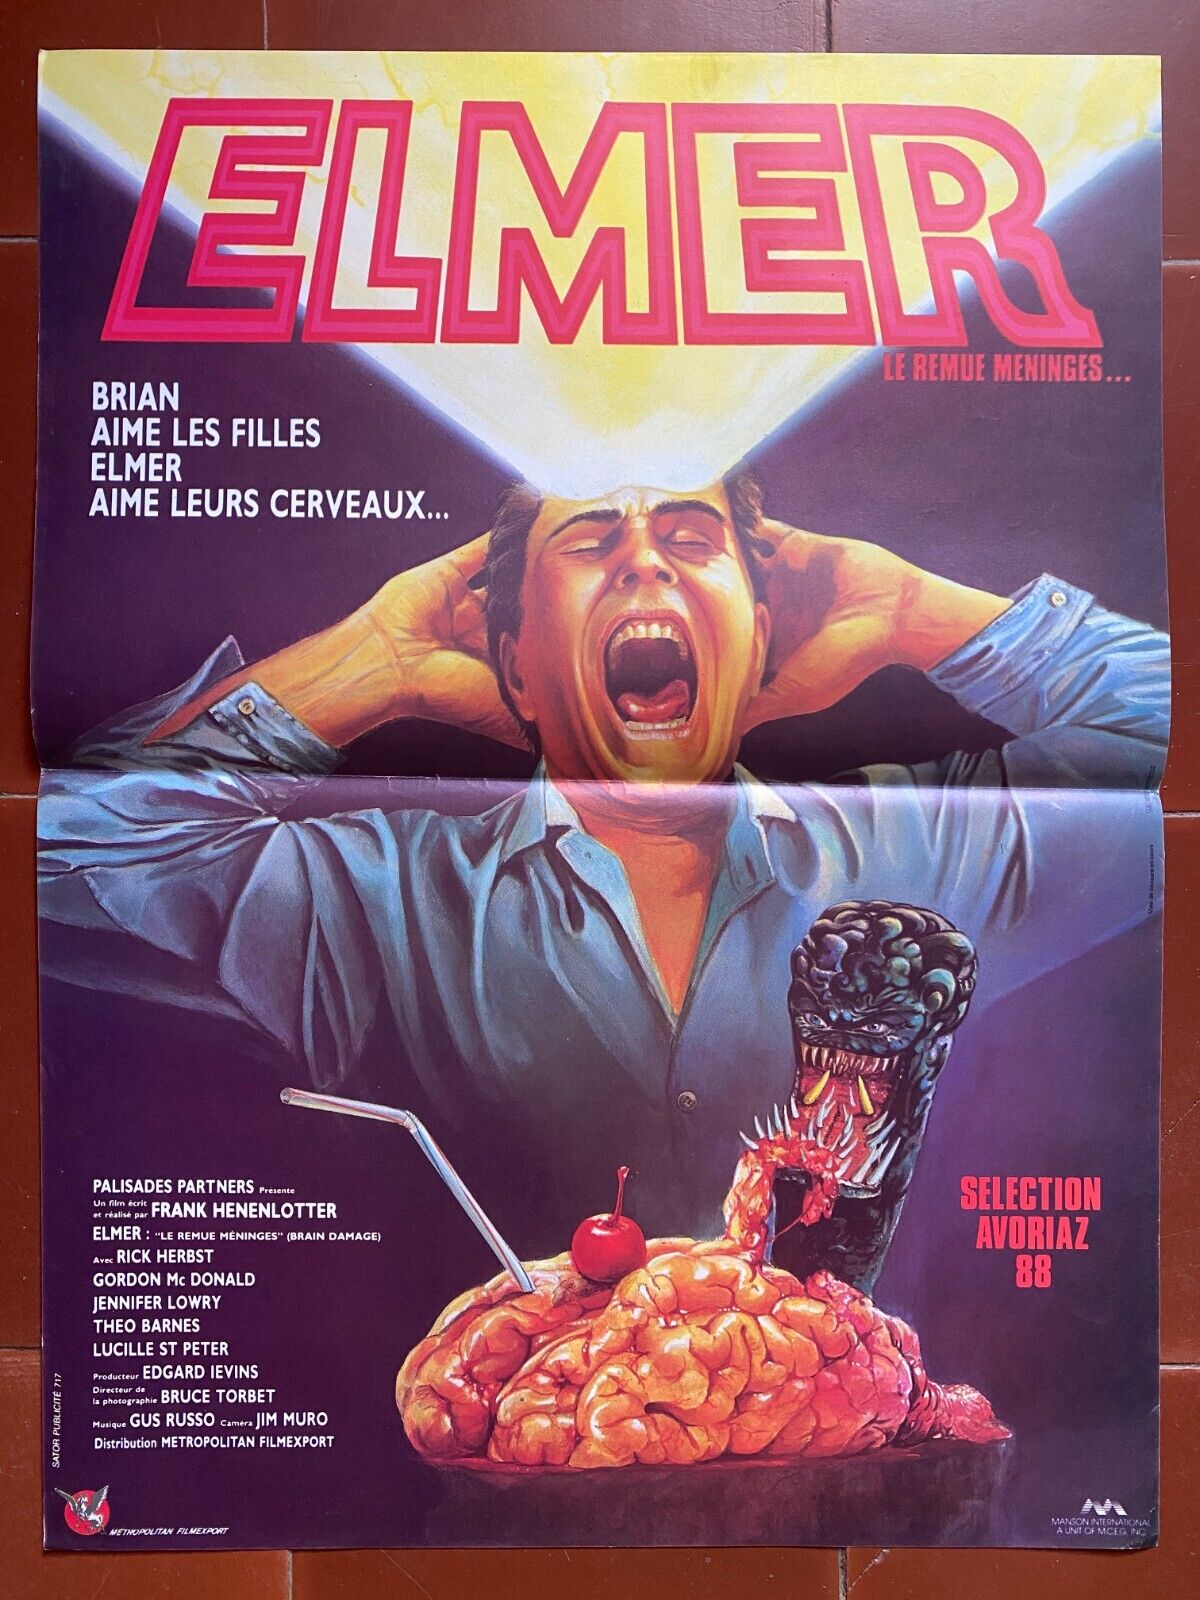 Poster Elmer The Remue-Meninges Avoriaz 88 Frank Henenlotter 15 11/16x23 5/8in